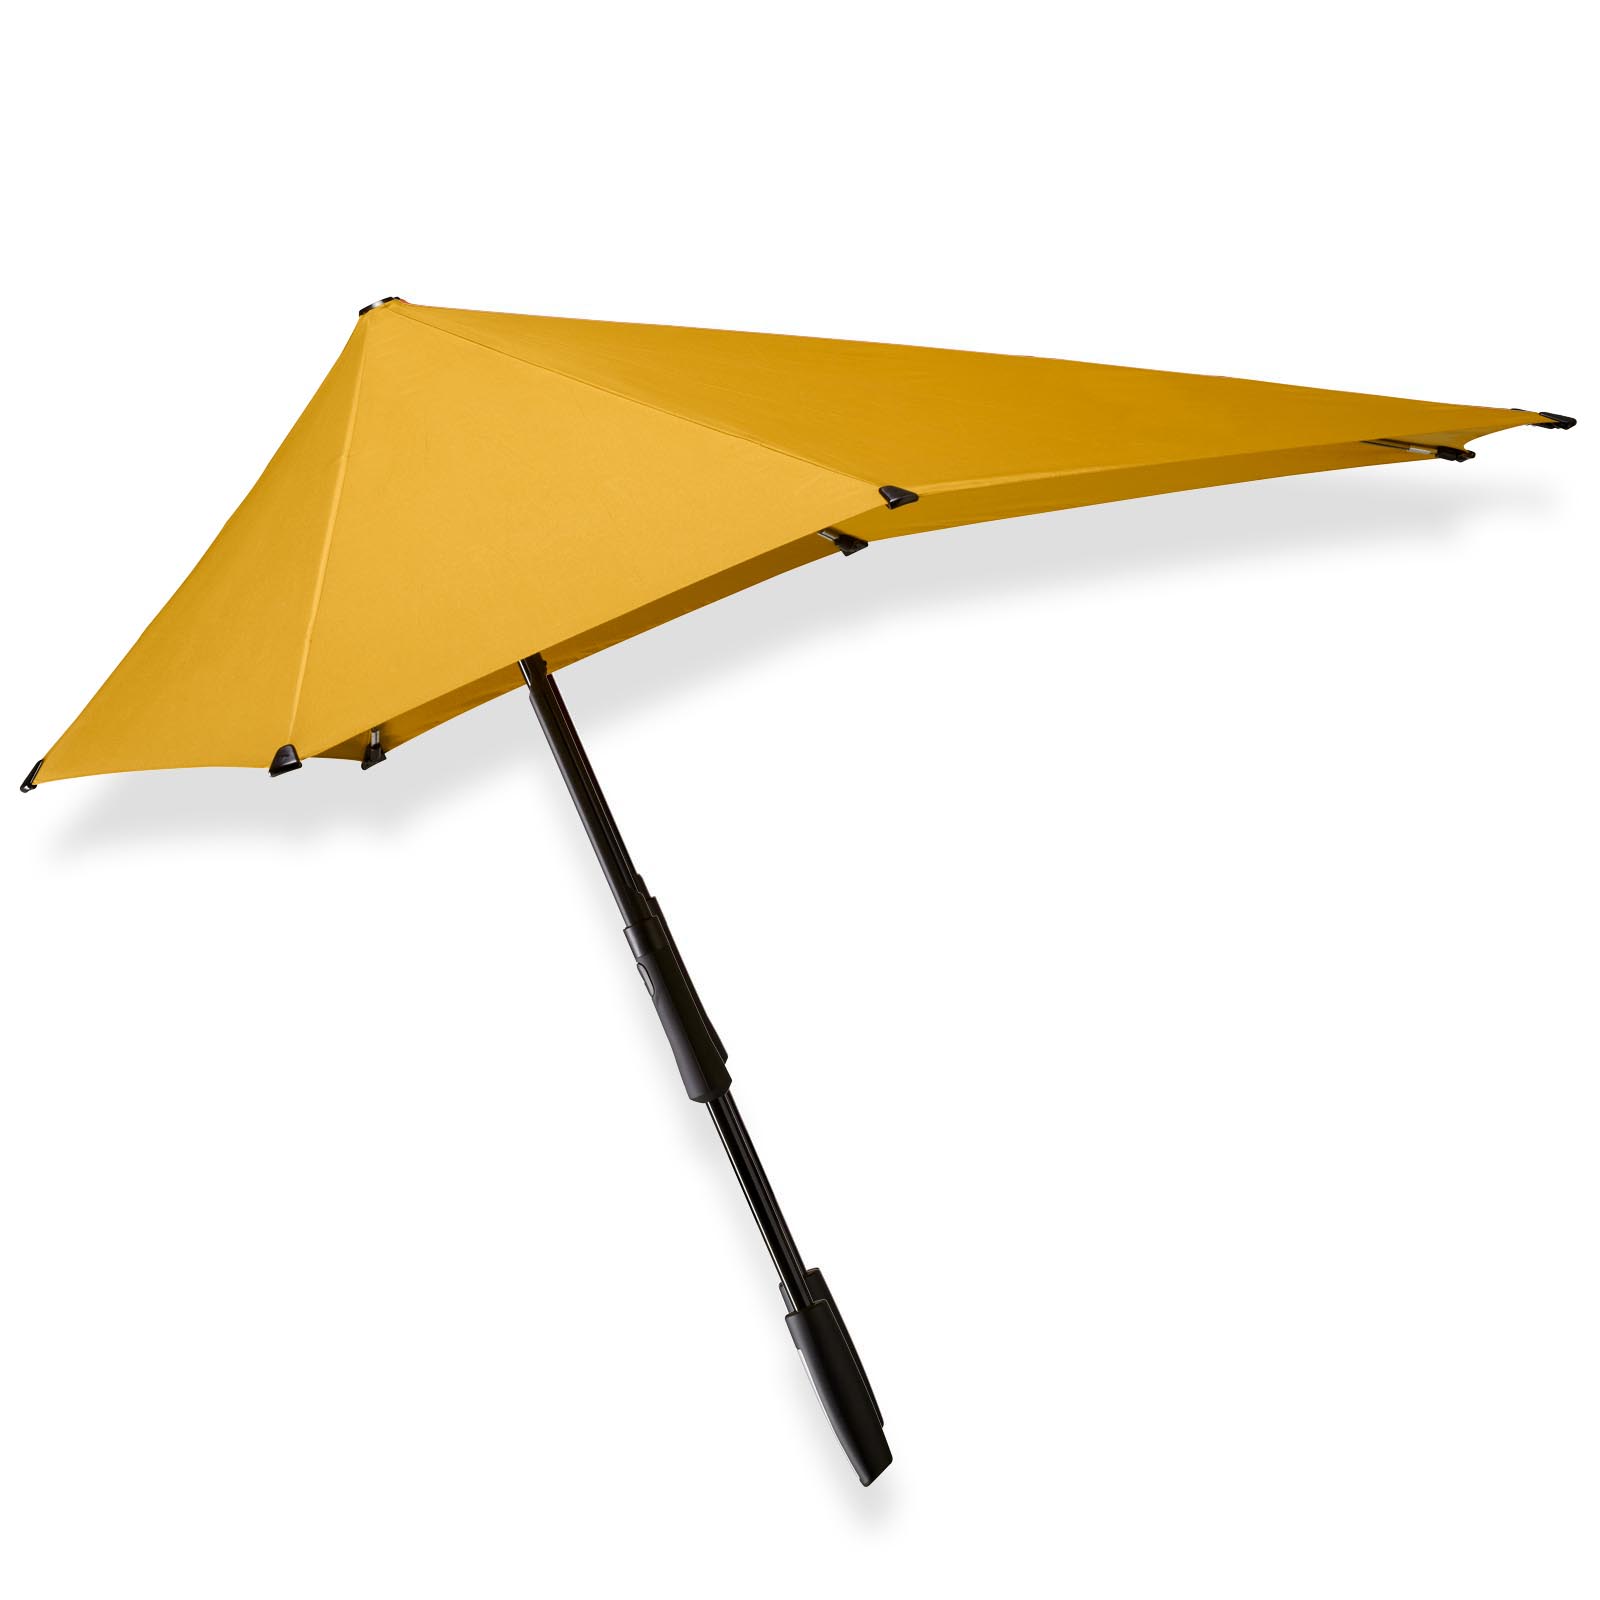 Karakteriseren jaloezie redden Gele lange grote paraplu kopen? senz° large daylily yellow